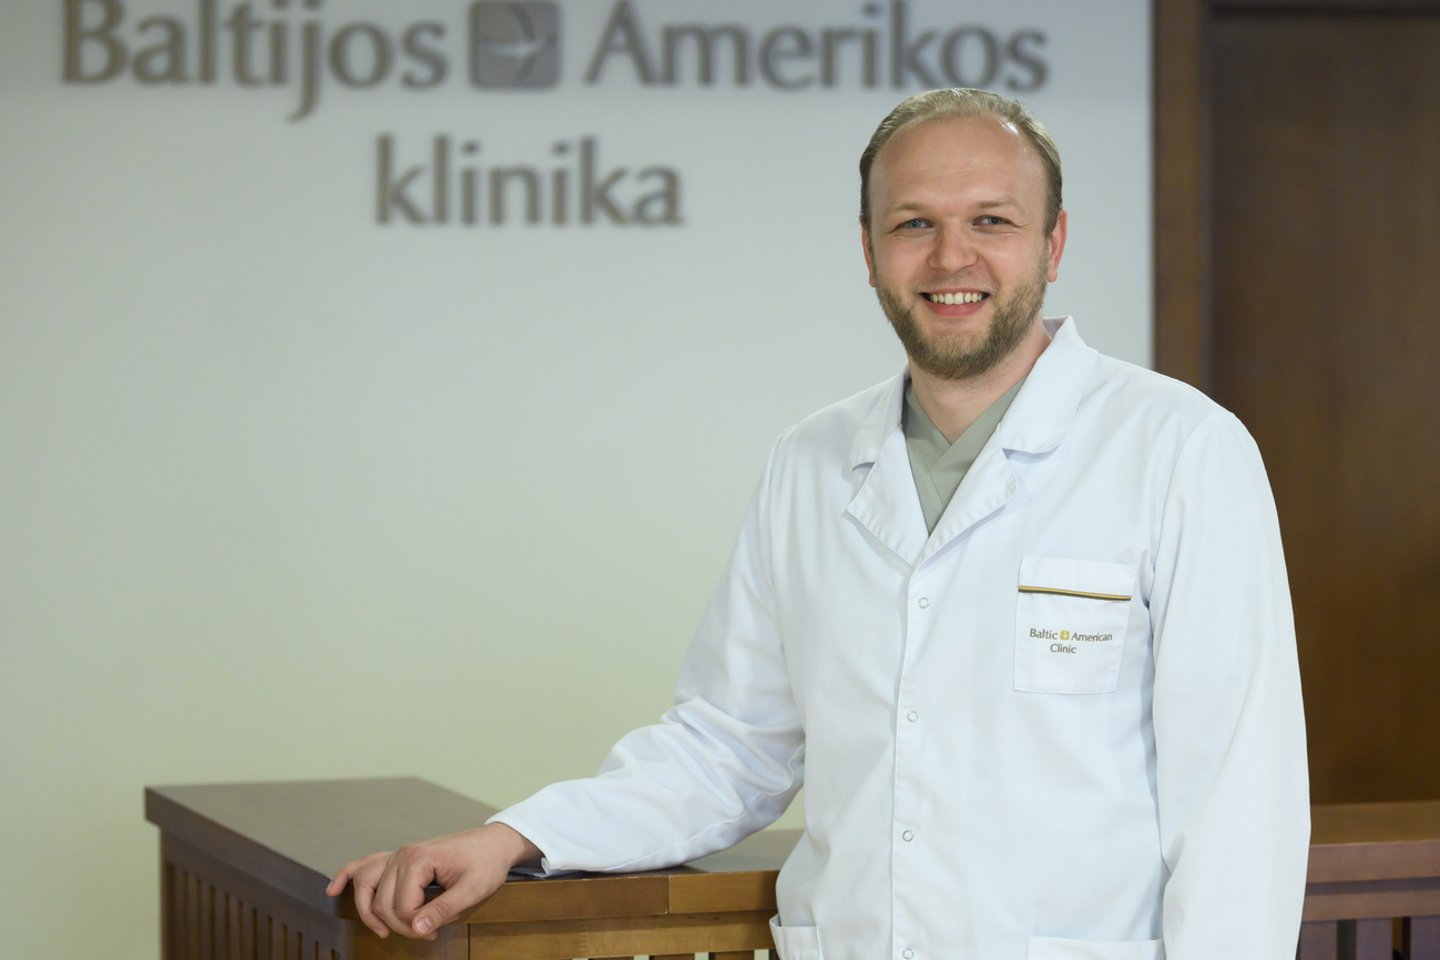 Baltijos-Amerikos terapijos ir chirurgijos klinikos pilvo chirurgas dr. Donatas Danys.